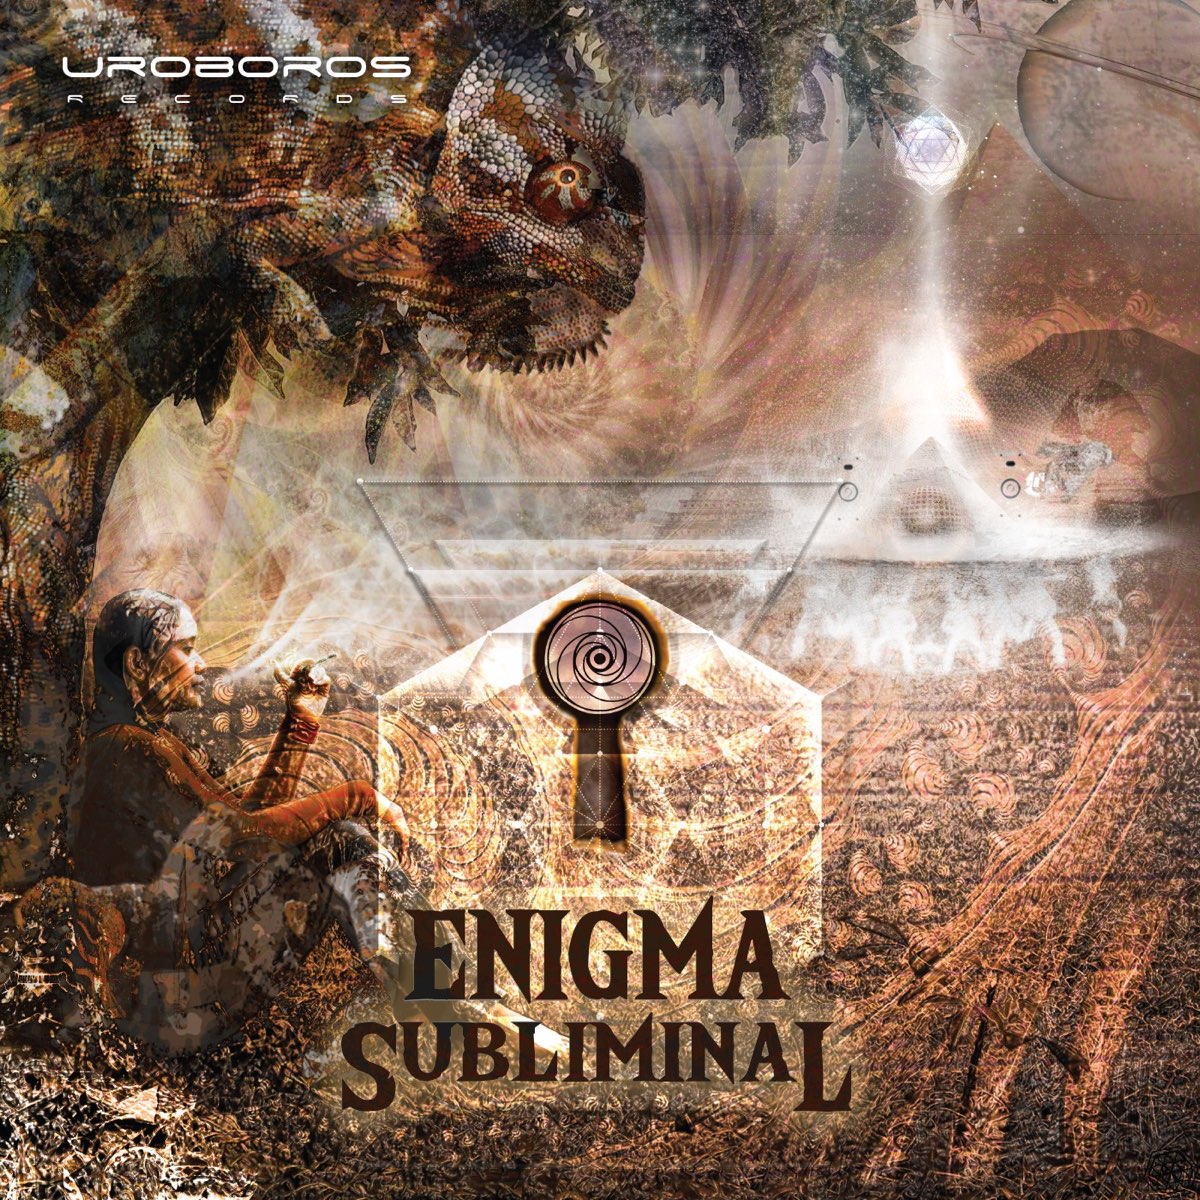 Слушать enigma в качестве. Enigma обложка. Enigma альбомы. Энигма обложки альбомов. Enigma группа Постер.